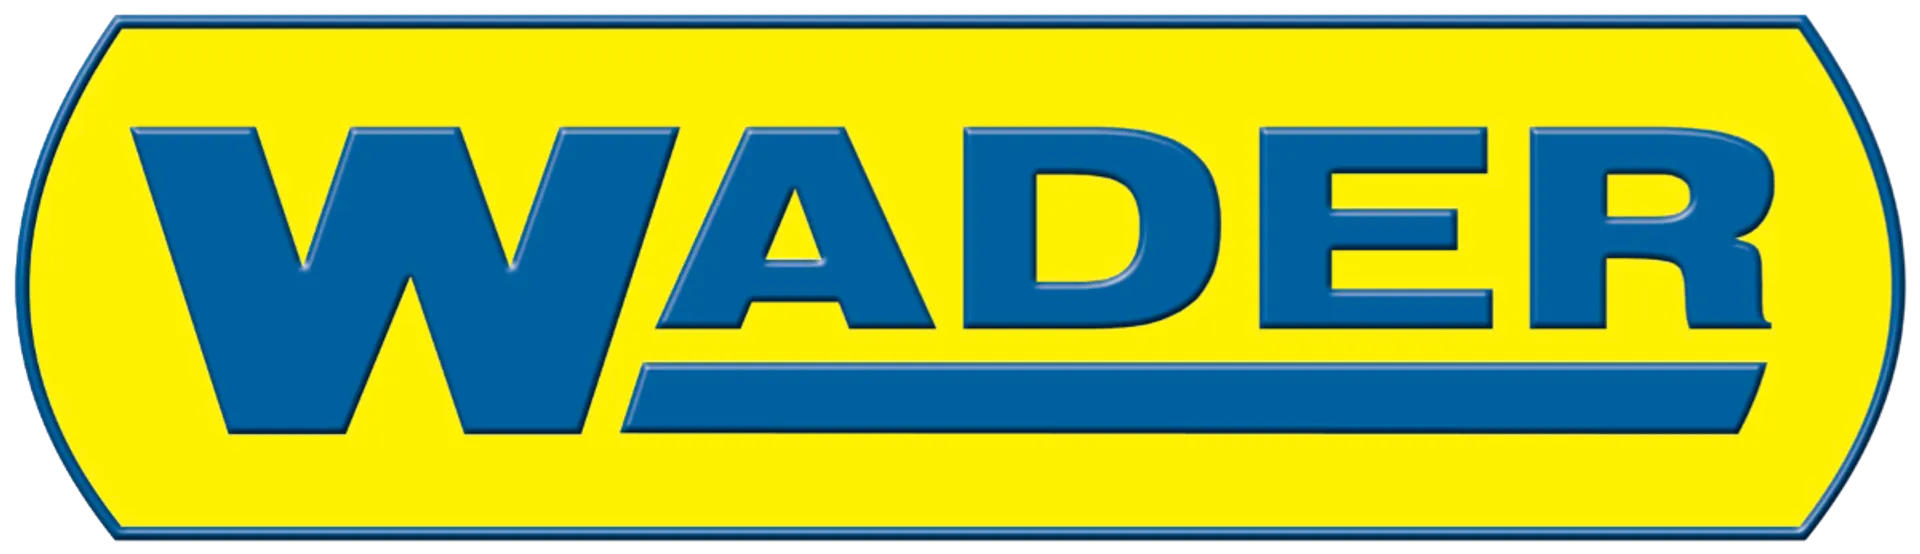 WADER logo